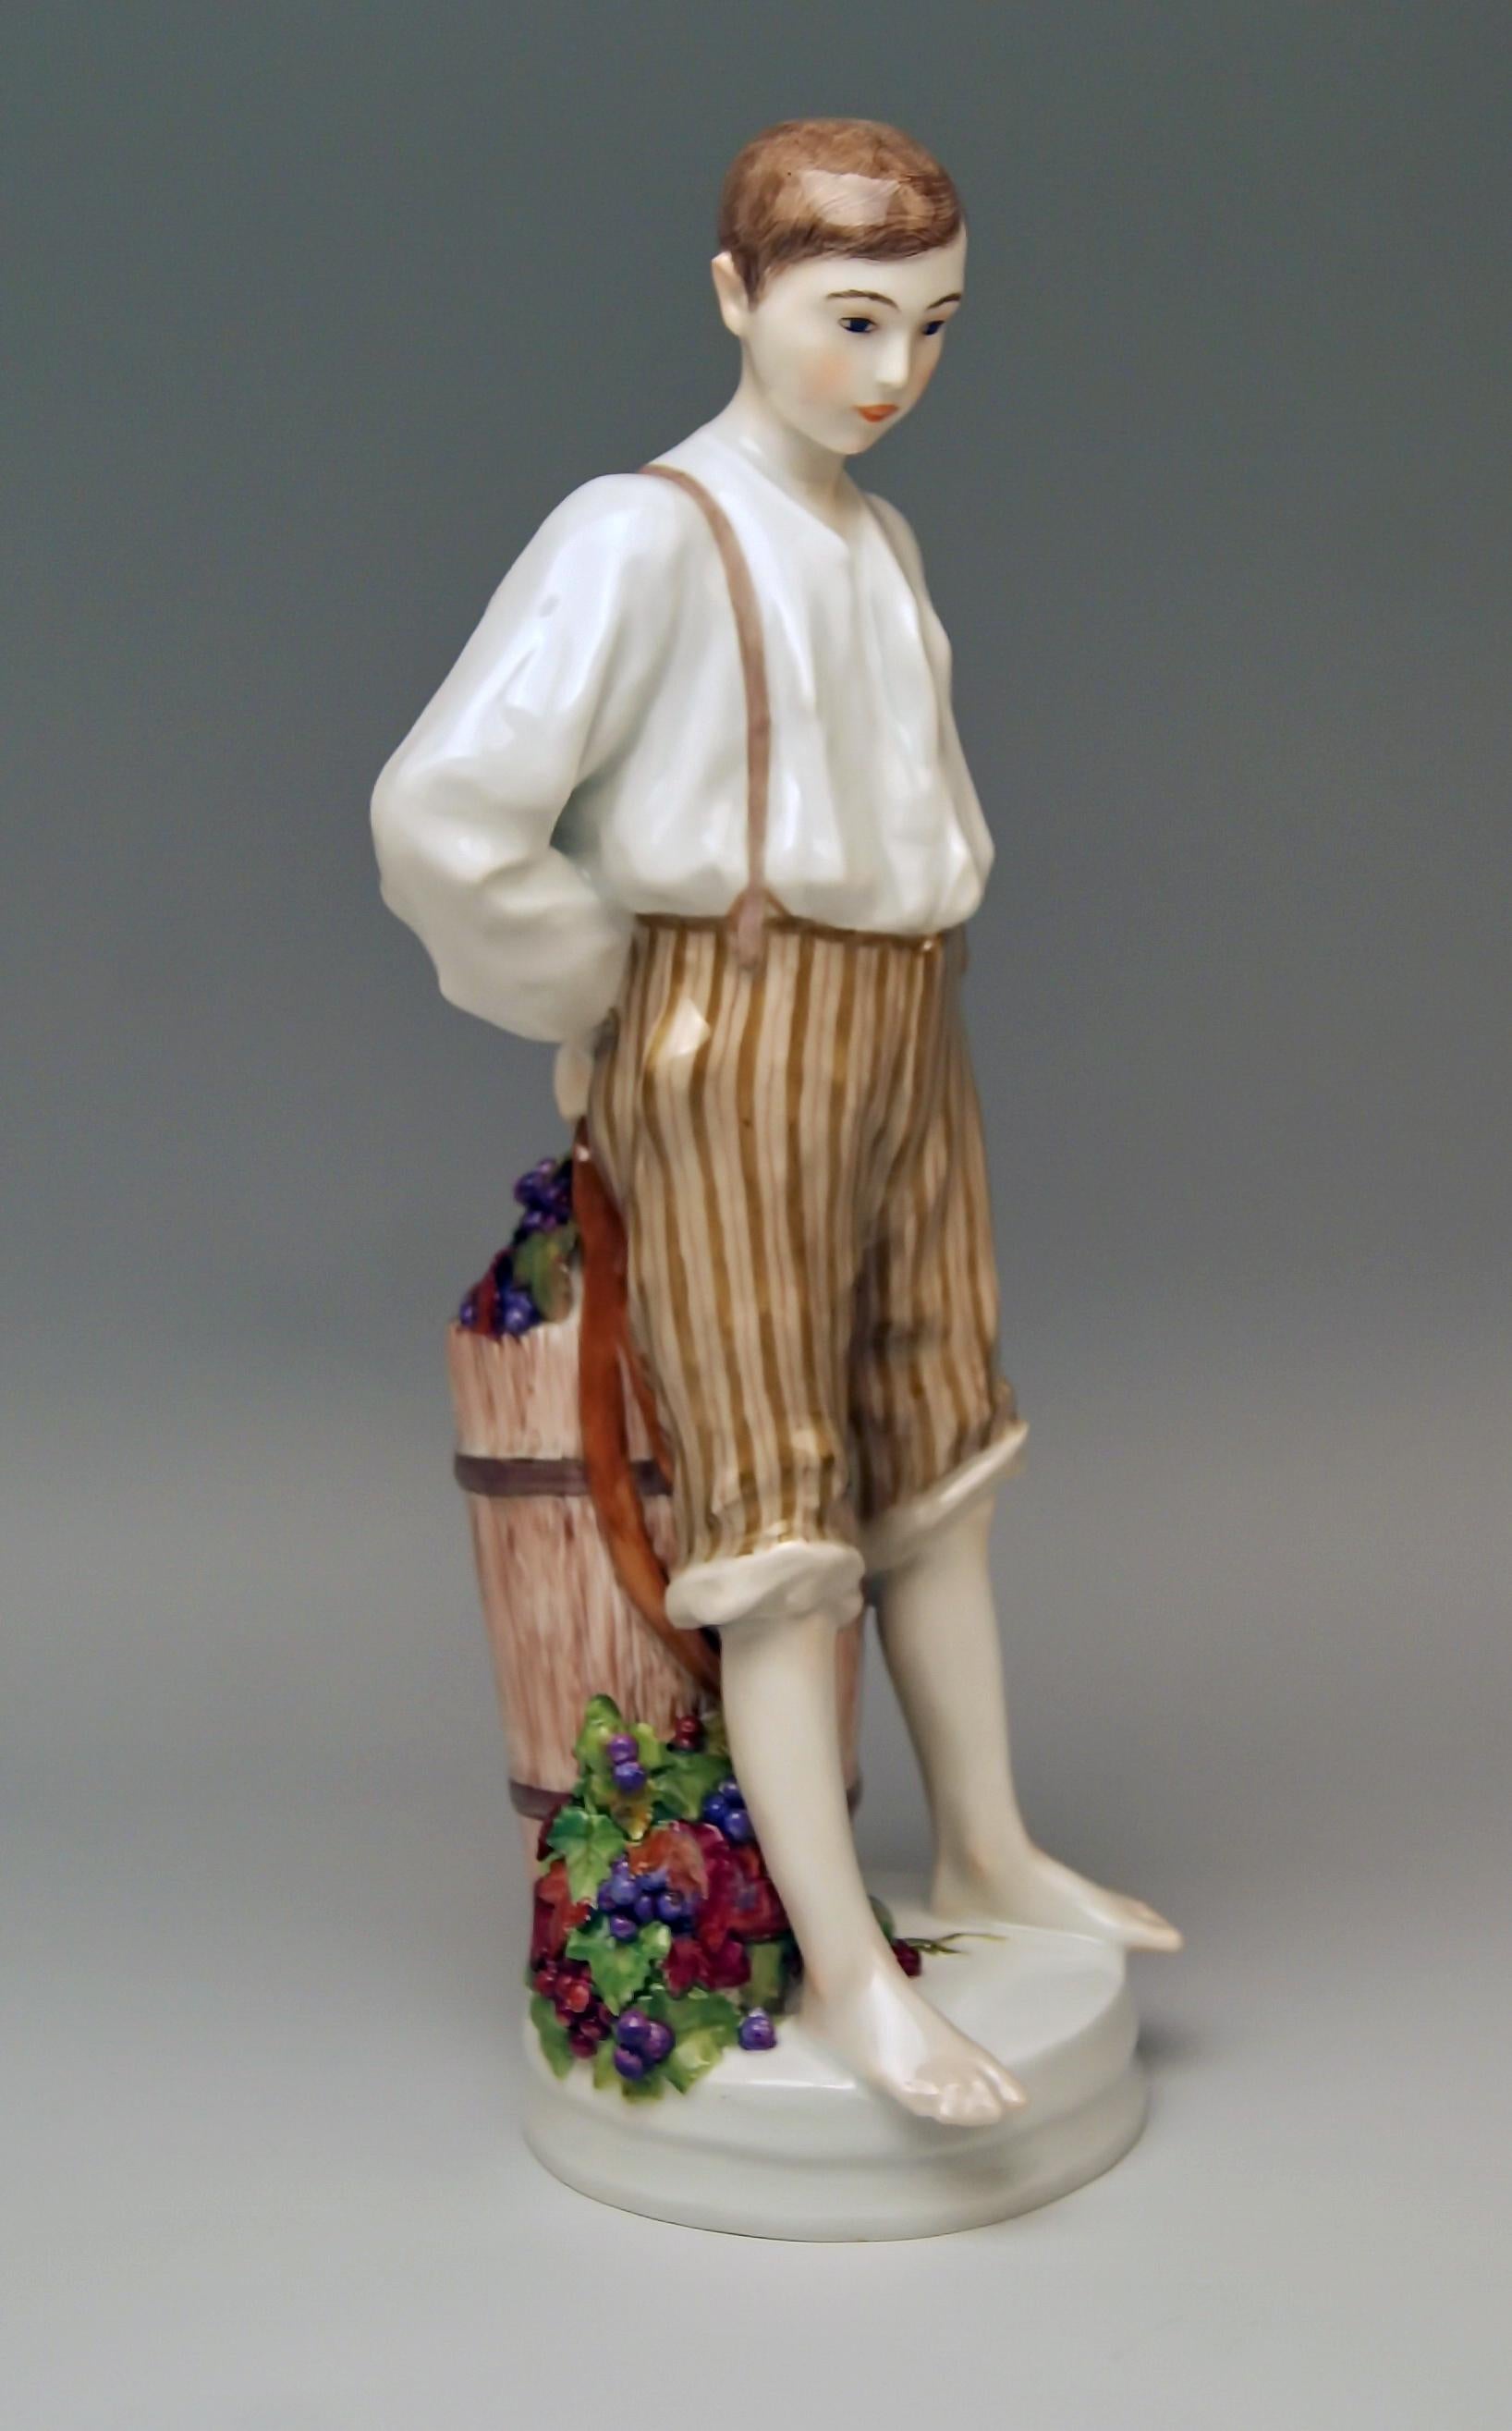 Seltene Meissener Figur: Junge mit Weintrauben gefüllter Kanne von Theodore Eichler, um 1910.

Größe:
Höhe 28,0 cm (= 11,02 Zoll)
Durchmesser 9,2 cm (= 3,62 Zoll)

Manufaktur: Meissen
Gepunzt: Blaue Meissener Schwertmarke